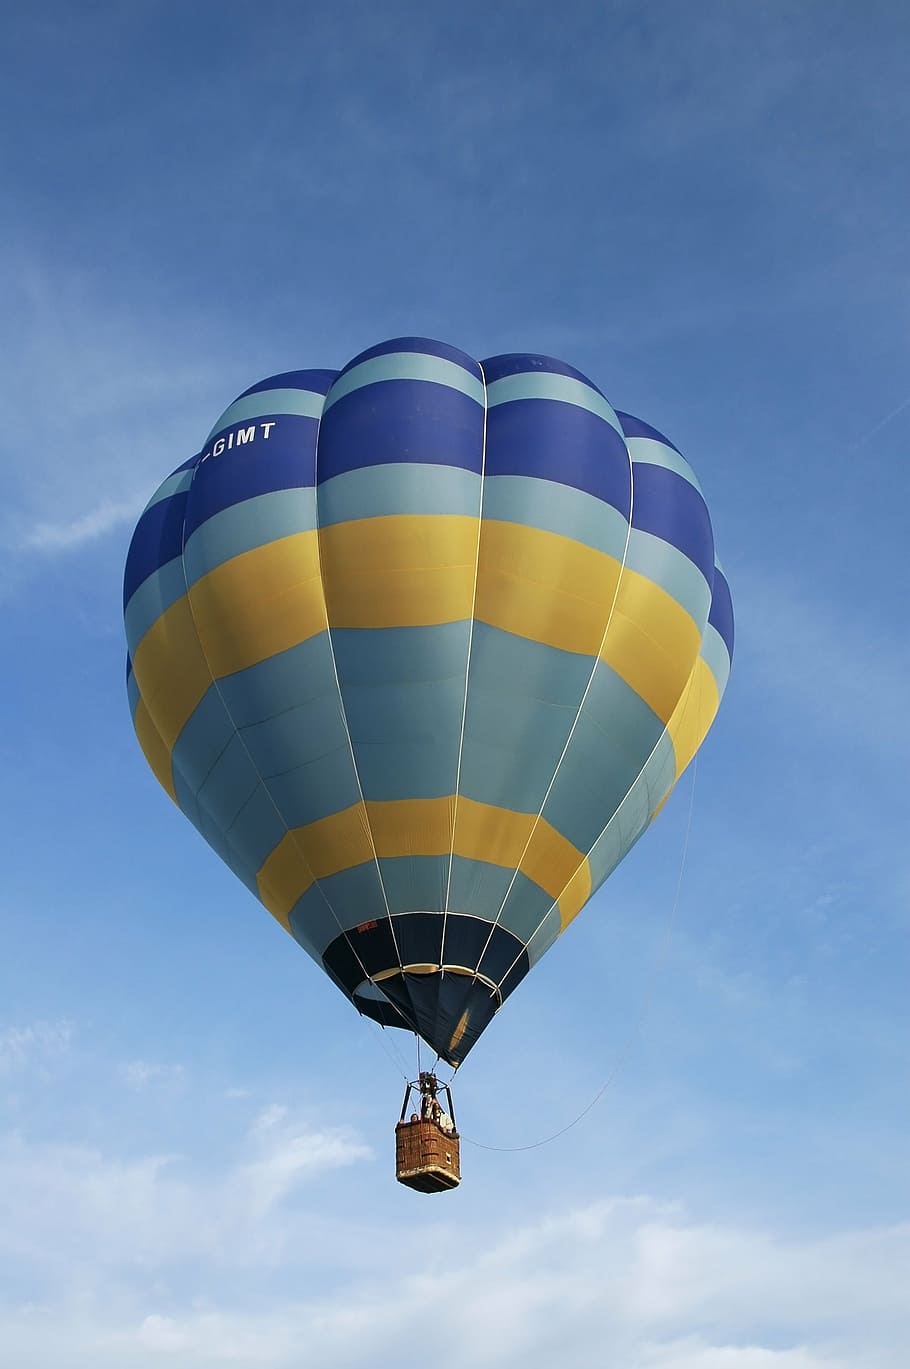 полеты на воздушном шаре, шар, небо, воздушный шар, воздух, синий, воздушный транспорт, транспорт, полет, приключение